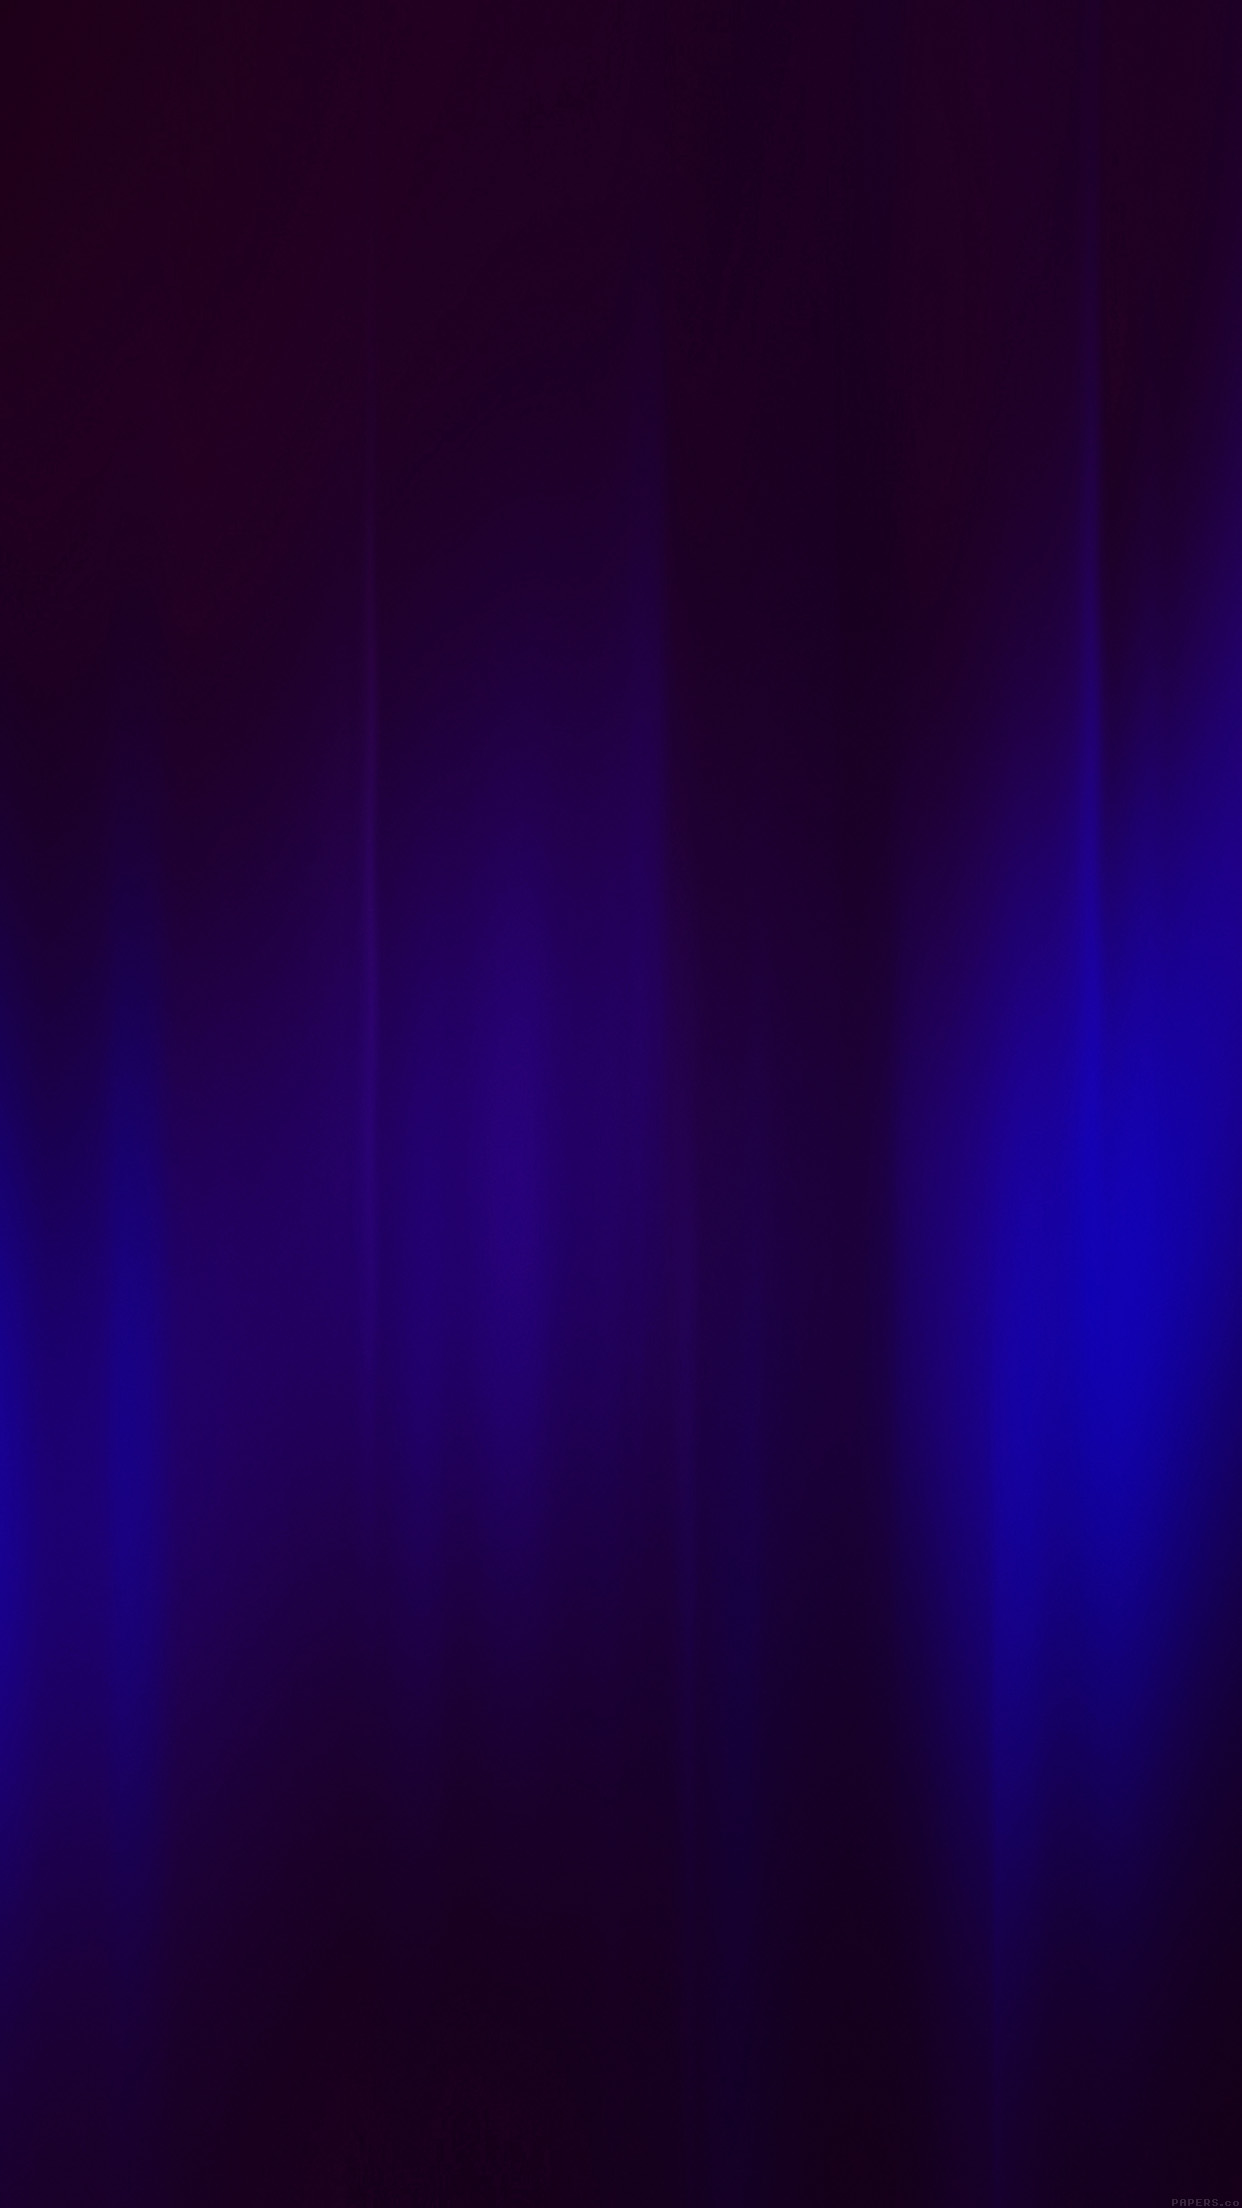 ダークブルーの模様の壁紙,青い,バイオレット,紫の,黒,エレクトリックブルー